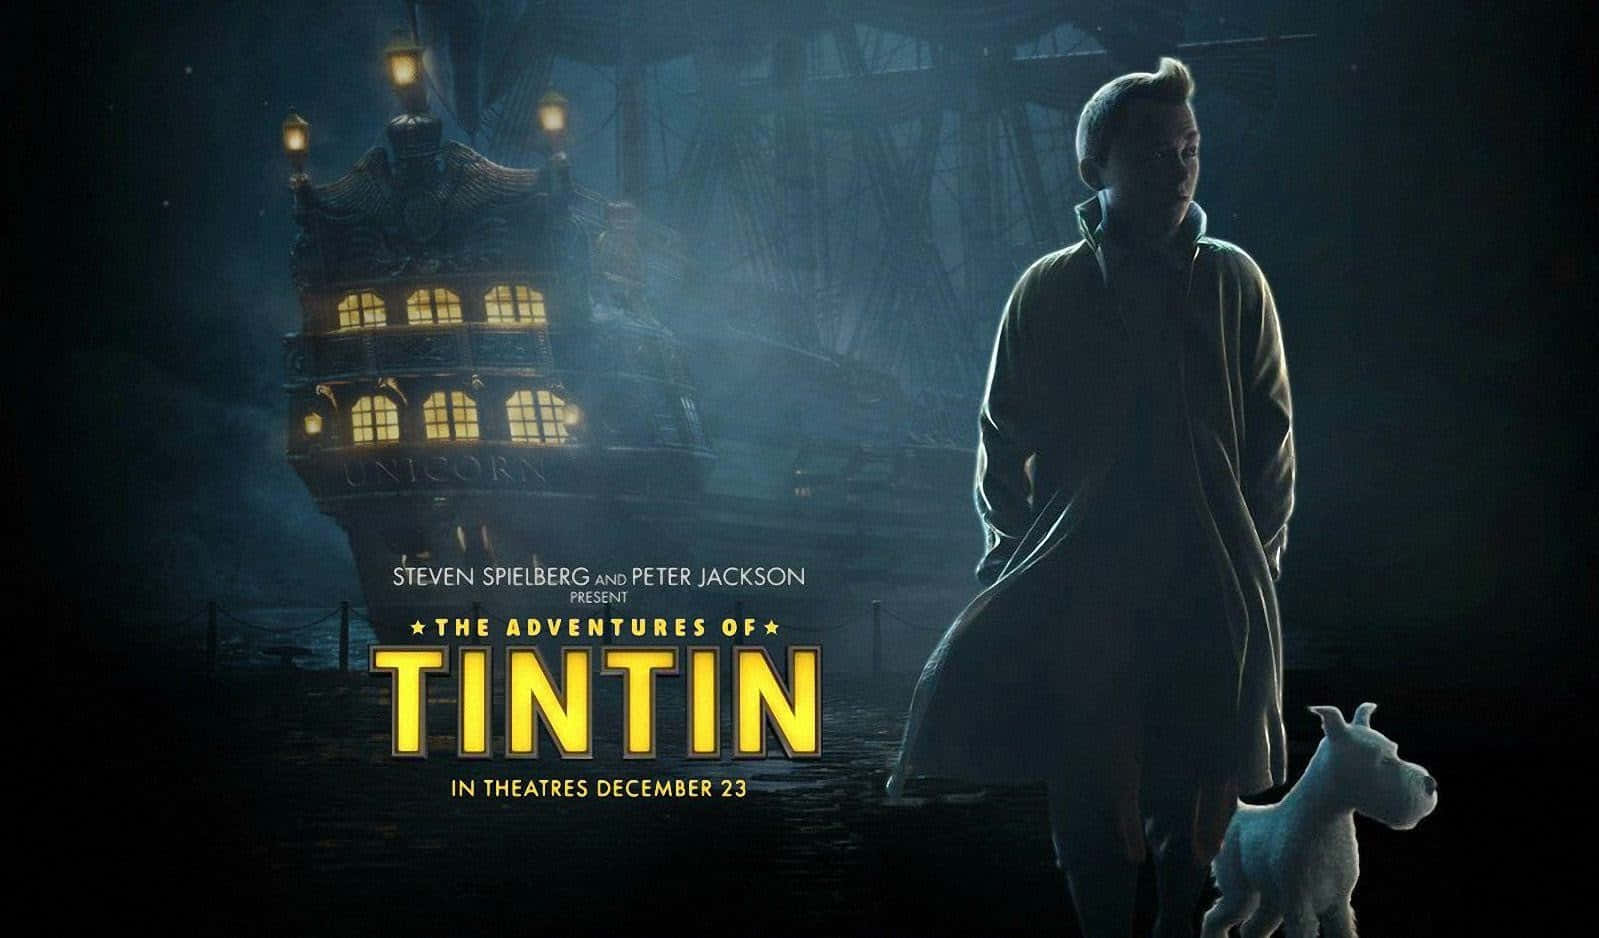 Mystiskaäventyret Med Tintin Affisch. Wallpaper